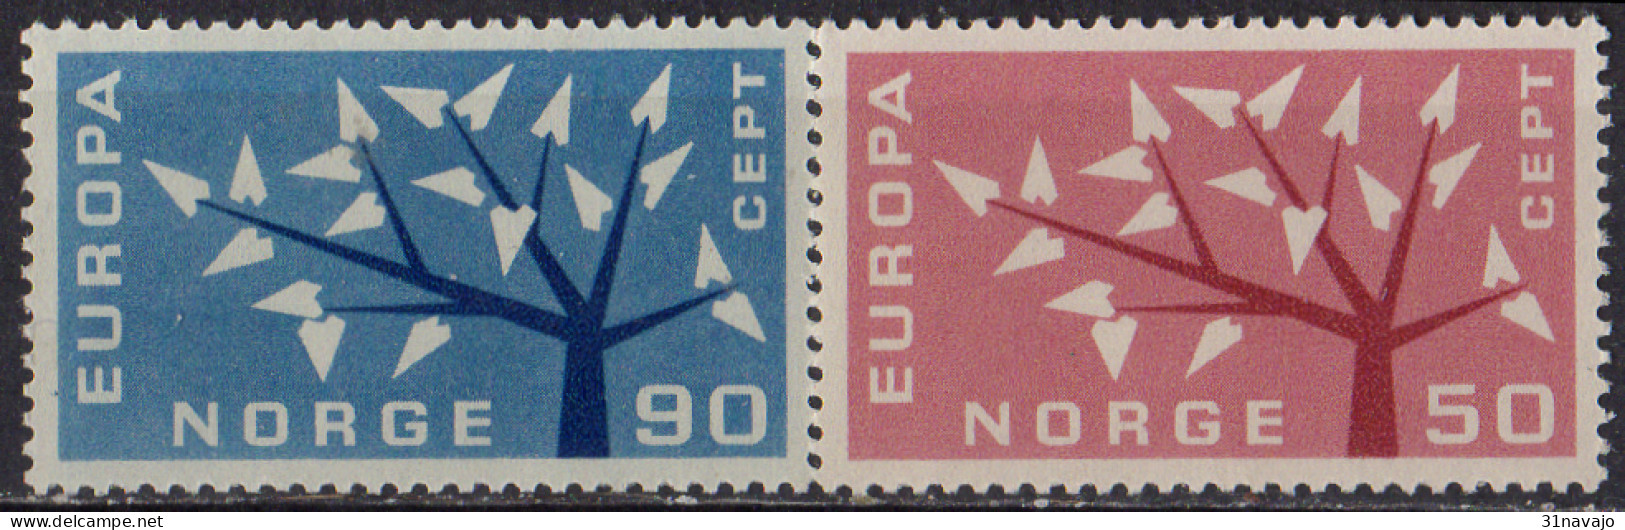 NORVEGE - Europa CEPT 1961 - Ungebraucht